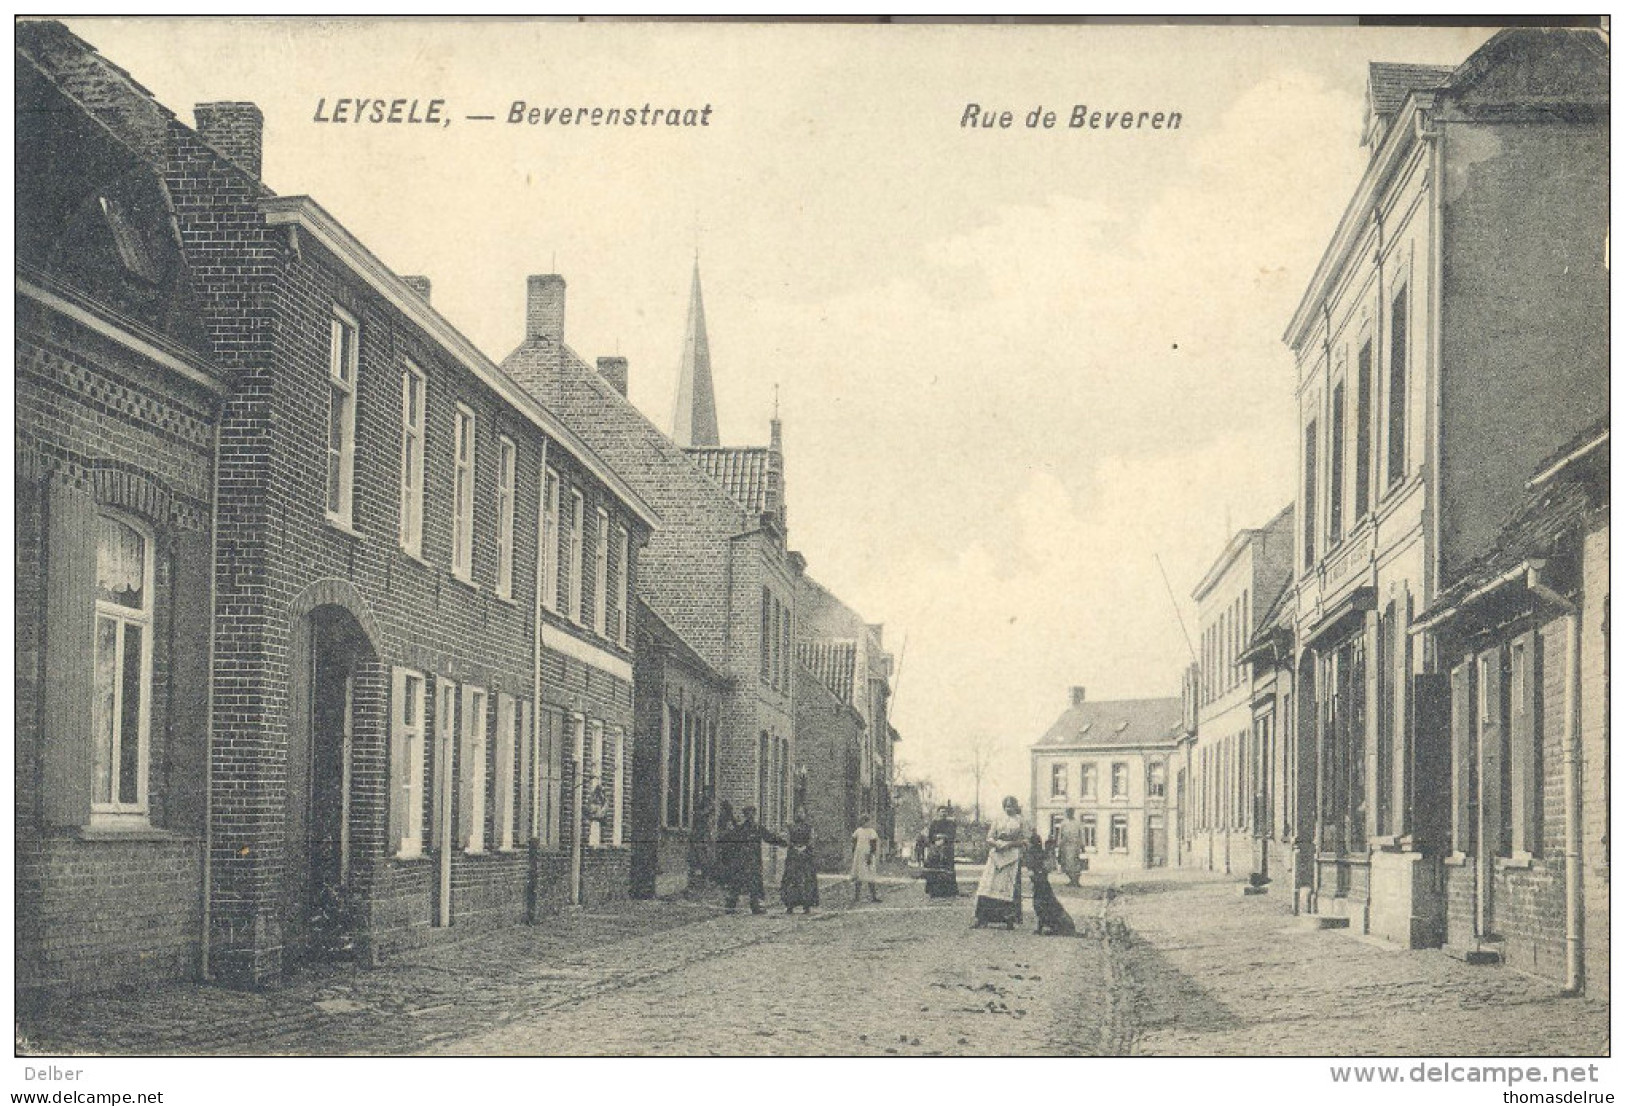 Ik12: LEYSELE,-Beverenstraat Rue De Beveren : Correspondance Militaire: * LEYSEELE* 1 XII 14 [sterstempel]> Charente - Not Occupied Zone